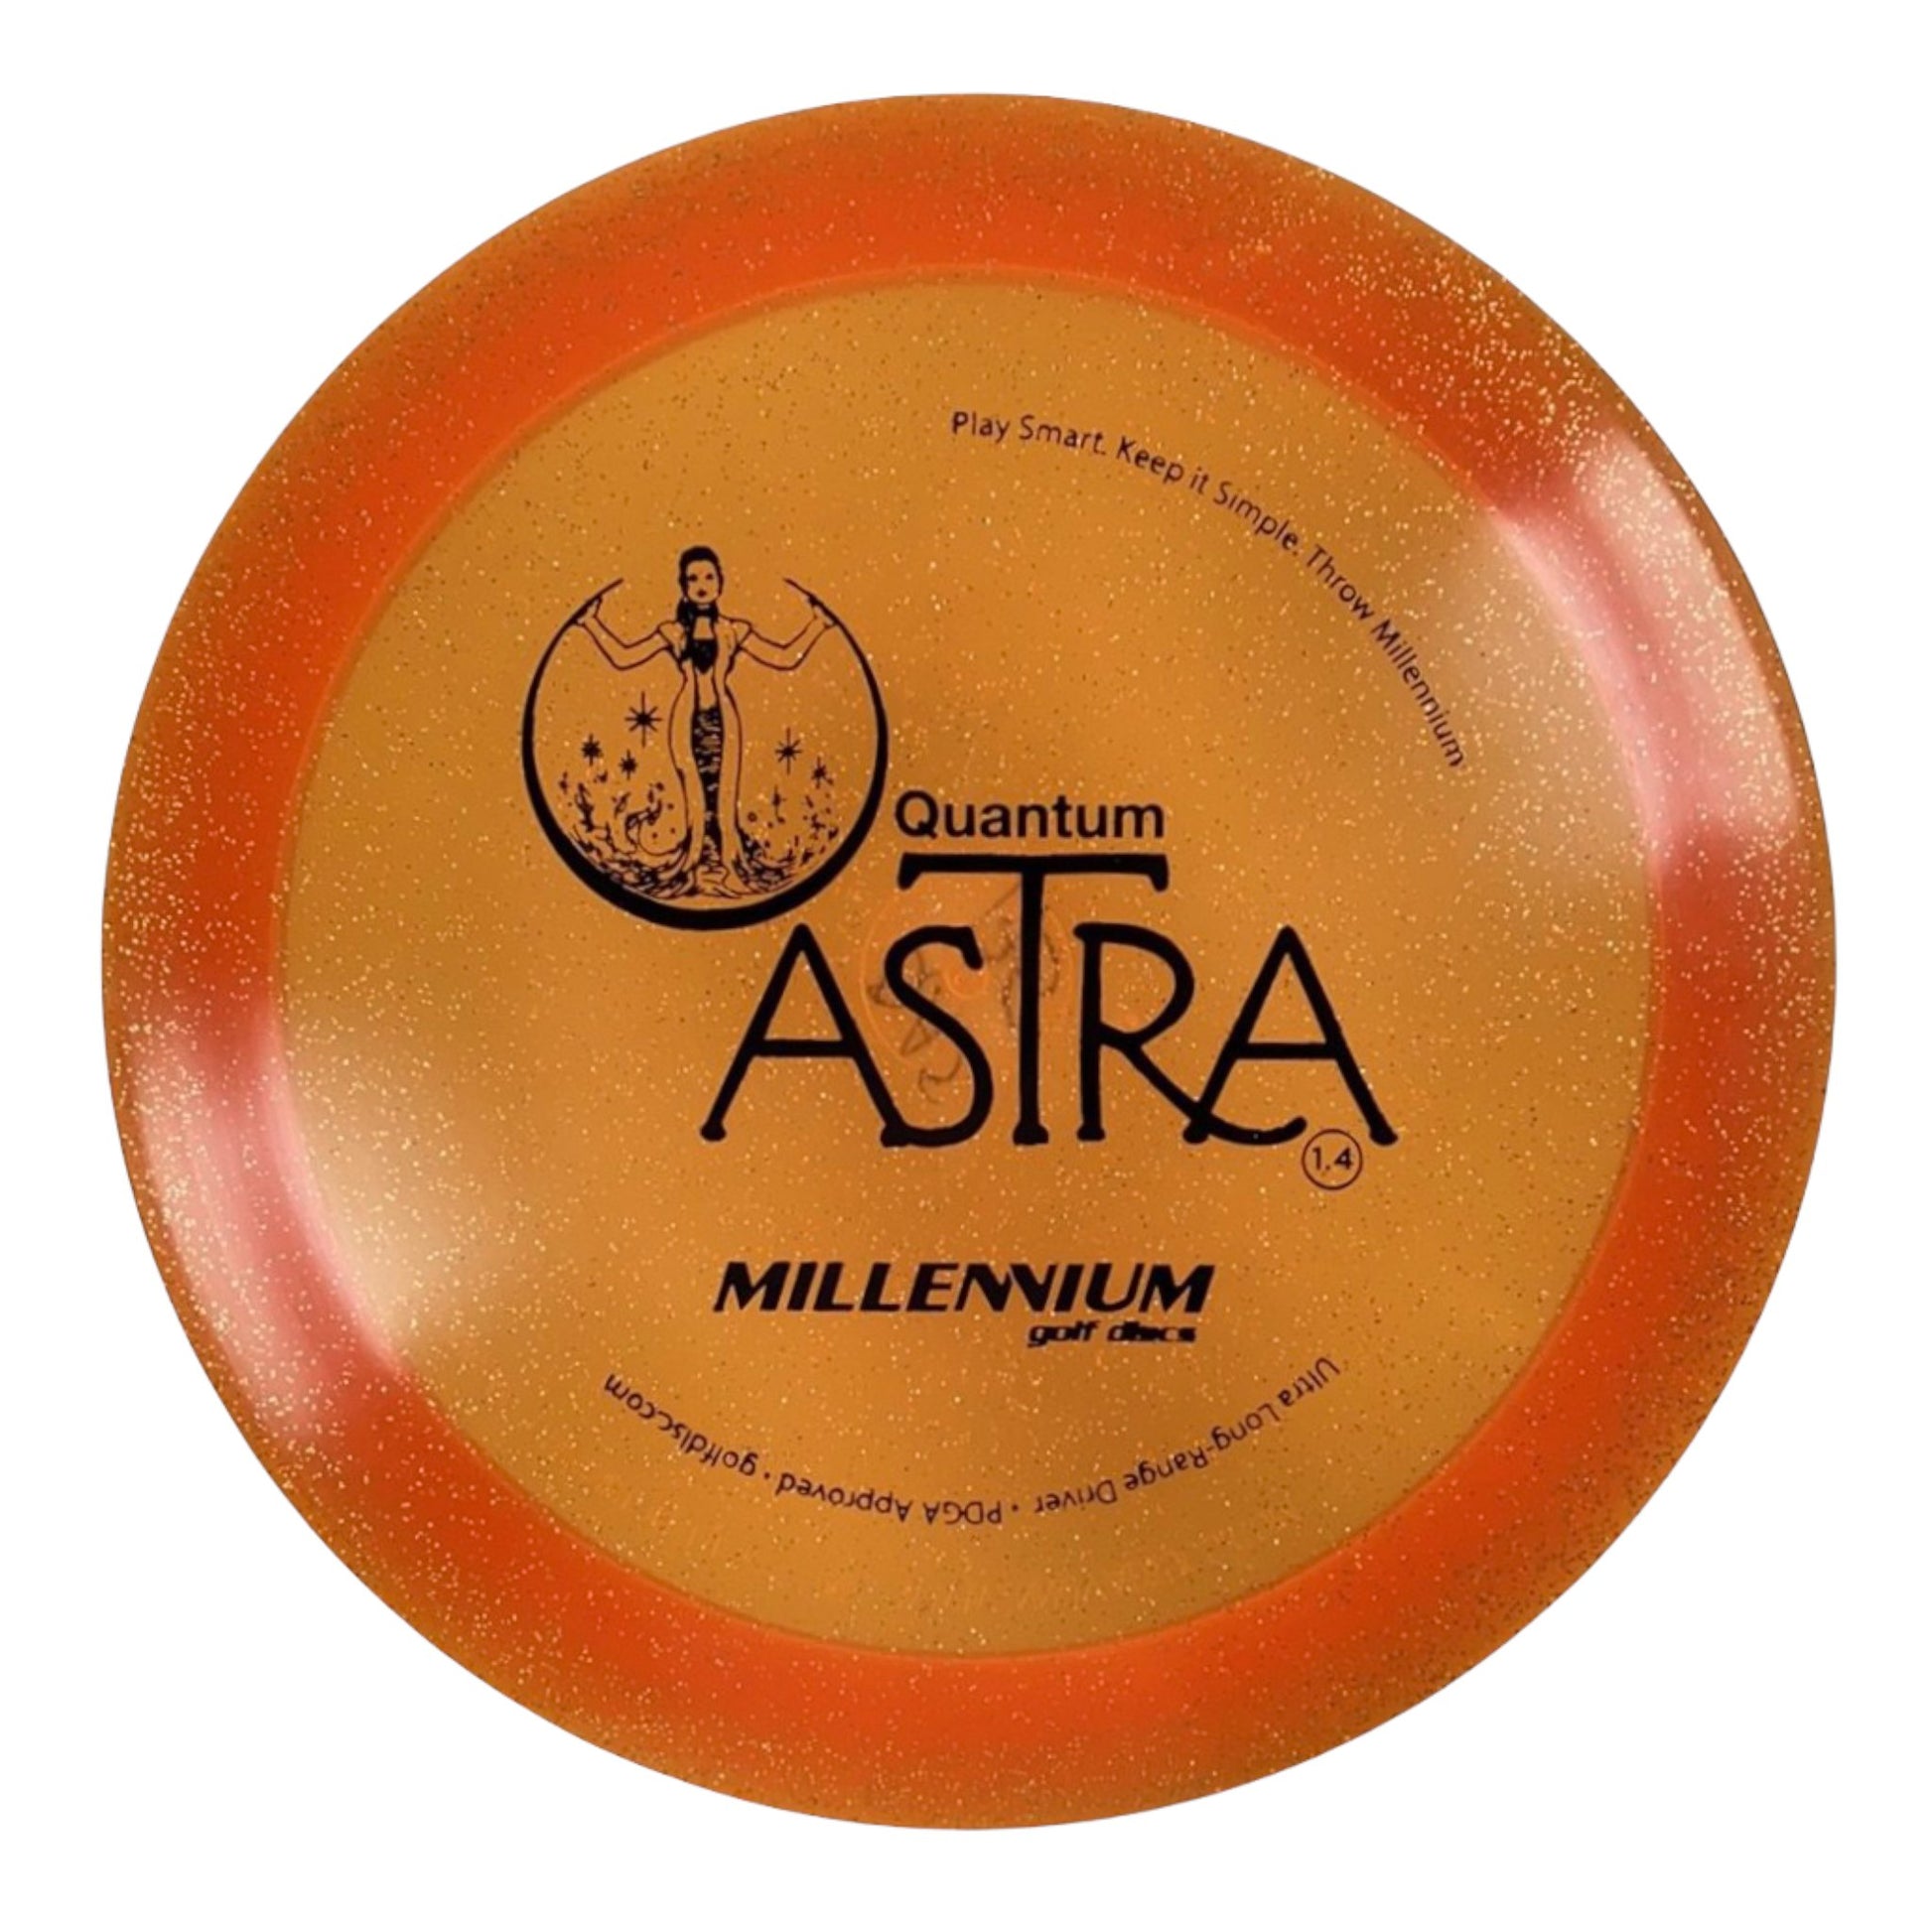 Millennium Golf Discs Astra | Quantum Stardust | Orange/Black 175g Disc Golf